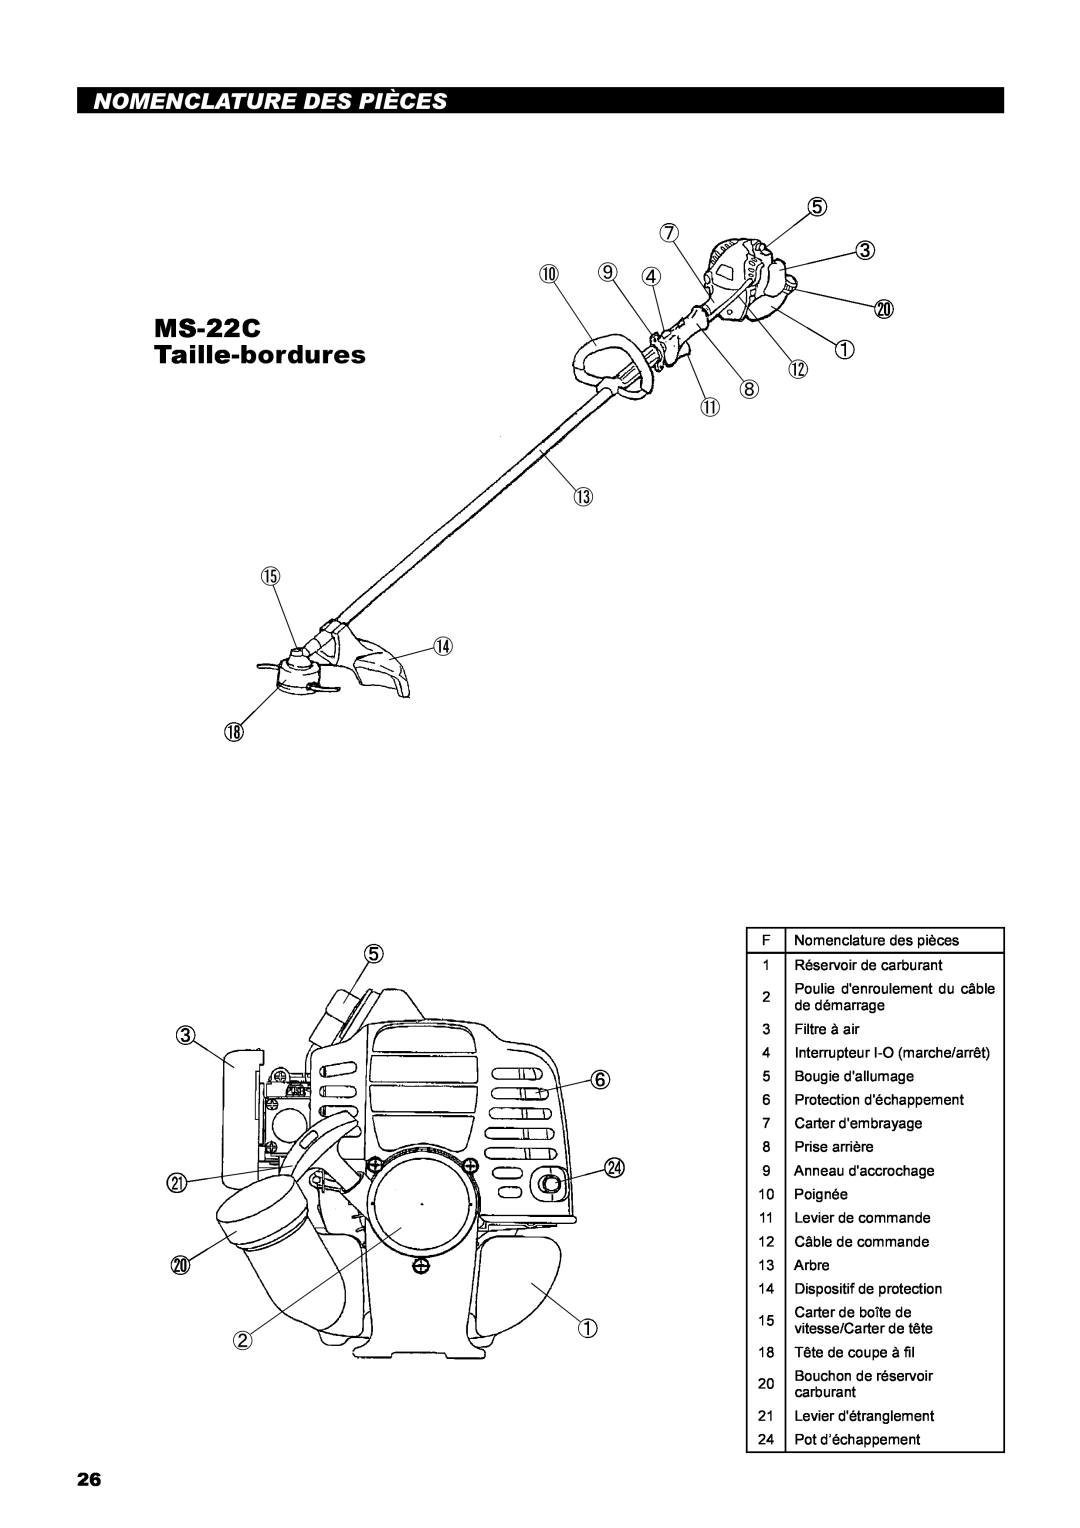 Dolmar instruction manual MS-22C Taille-bordures, Nomenclature Des Pièces, ⑤ ⑦ ③ ⑩ ⑨ ④ ⑳ ① ⑫ ⑧ ⑪ ⑬, ⑮ ⑭ ⑱ 